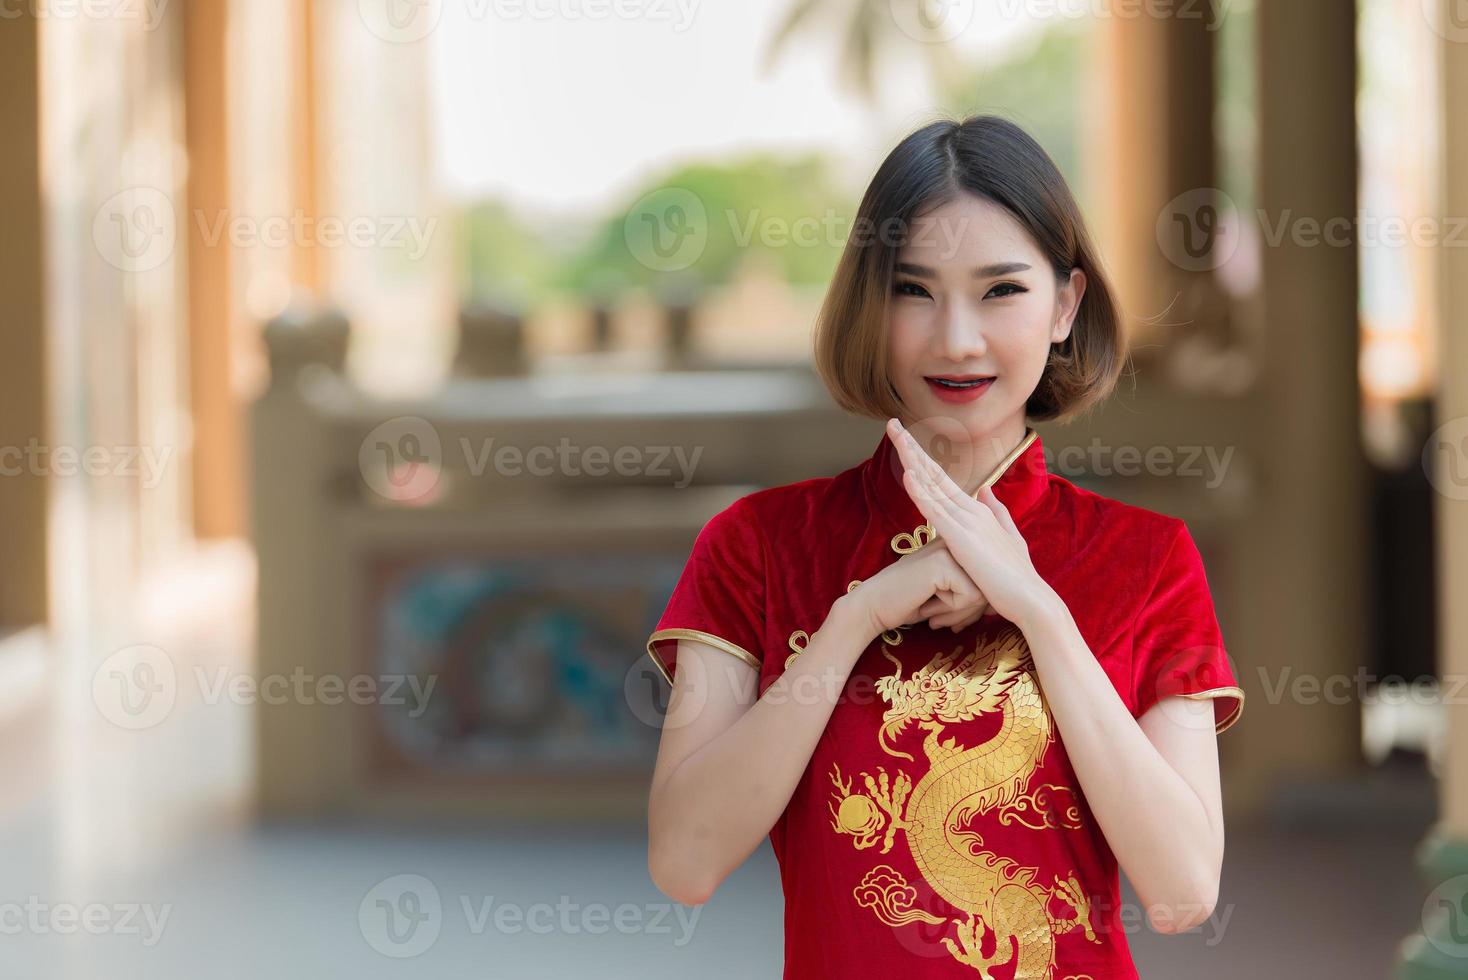 portret mooie aziatische vrouw in cheongsam-jurk, thailand-mensen, gelukkig chinees nieuwjaarsconcept, gelukkige aziatische dame in chinese klederdracht foto